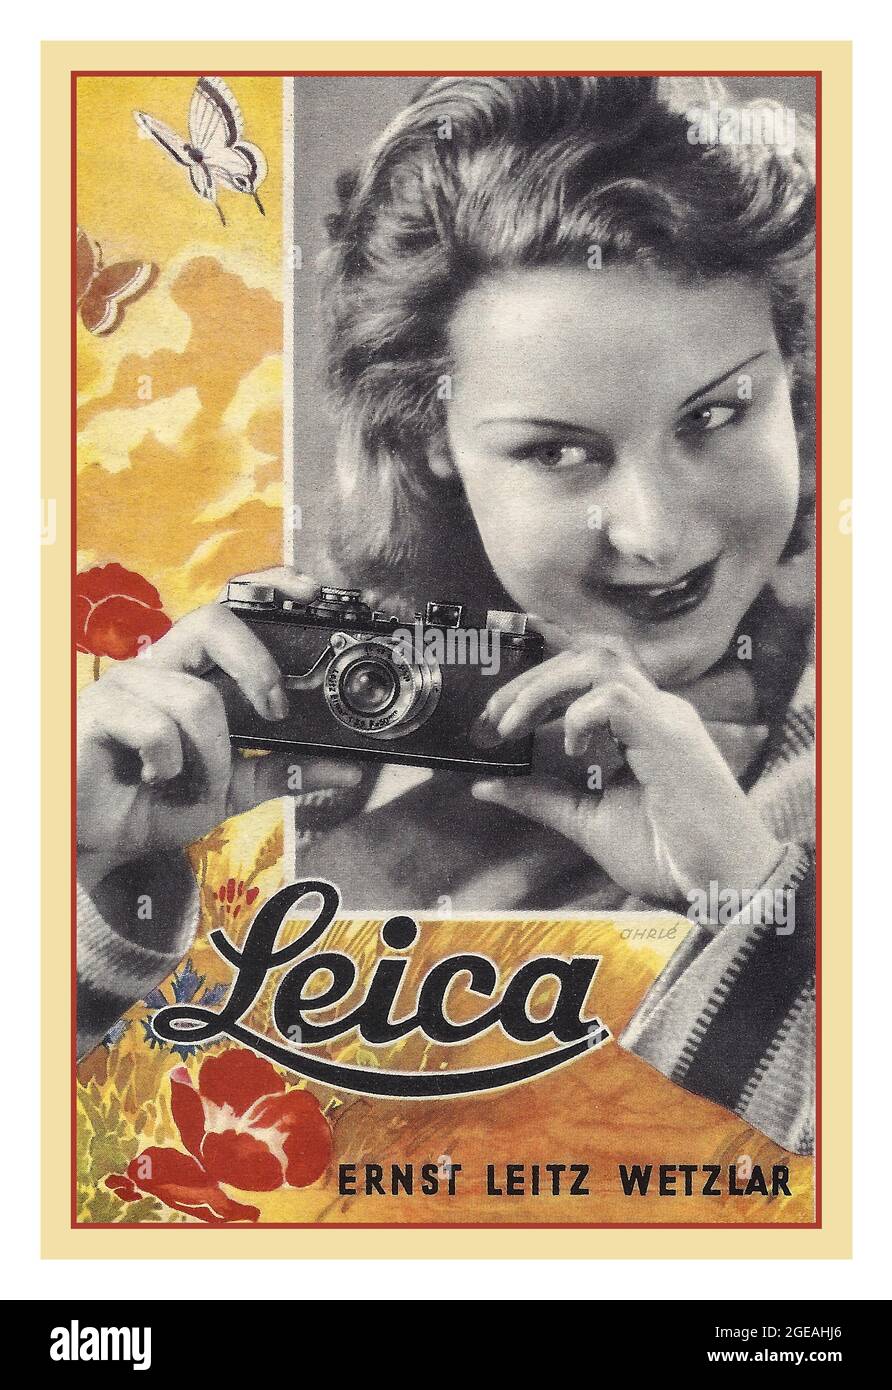 Altes PLAKAT MIT DER LEICA 1 (A), einem frühen 35-mm-Fotodruck, auf dem eine attraktive Dame mit der ursprünglichen revolutionären deutschen 35-mm-Kamera aus den 1920er Jahren von Ernst Leitz in Wetzlar zu sehen ist. Die Leica 1(A) war die erste kommerziell erhältliche Leica 35mm-Kamera. Die Leica, entworfen von Oscar Barnack, wurde 1924 angekündigt und 1925 erstmals an die Öffentlichkeit verkauft. Die Leica war ein sofortiger Erfolg und verantwortlich für die Popularisierung der 35mm-Filmfotografie. Stockfoto